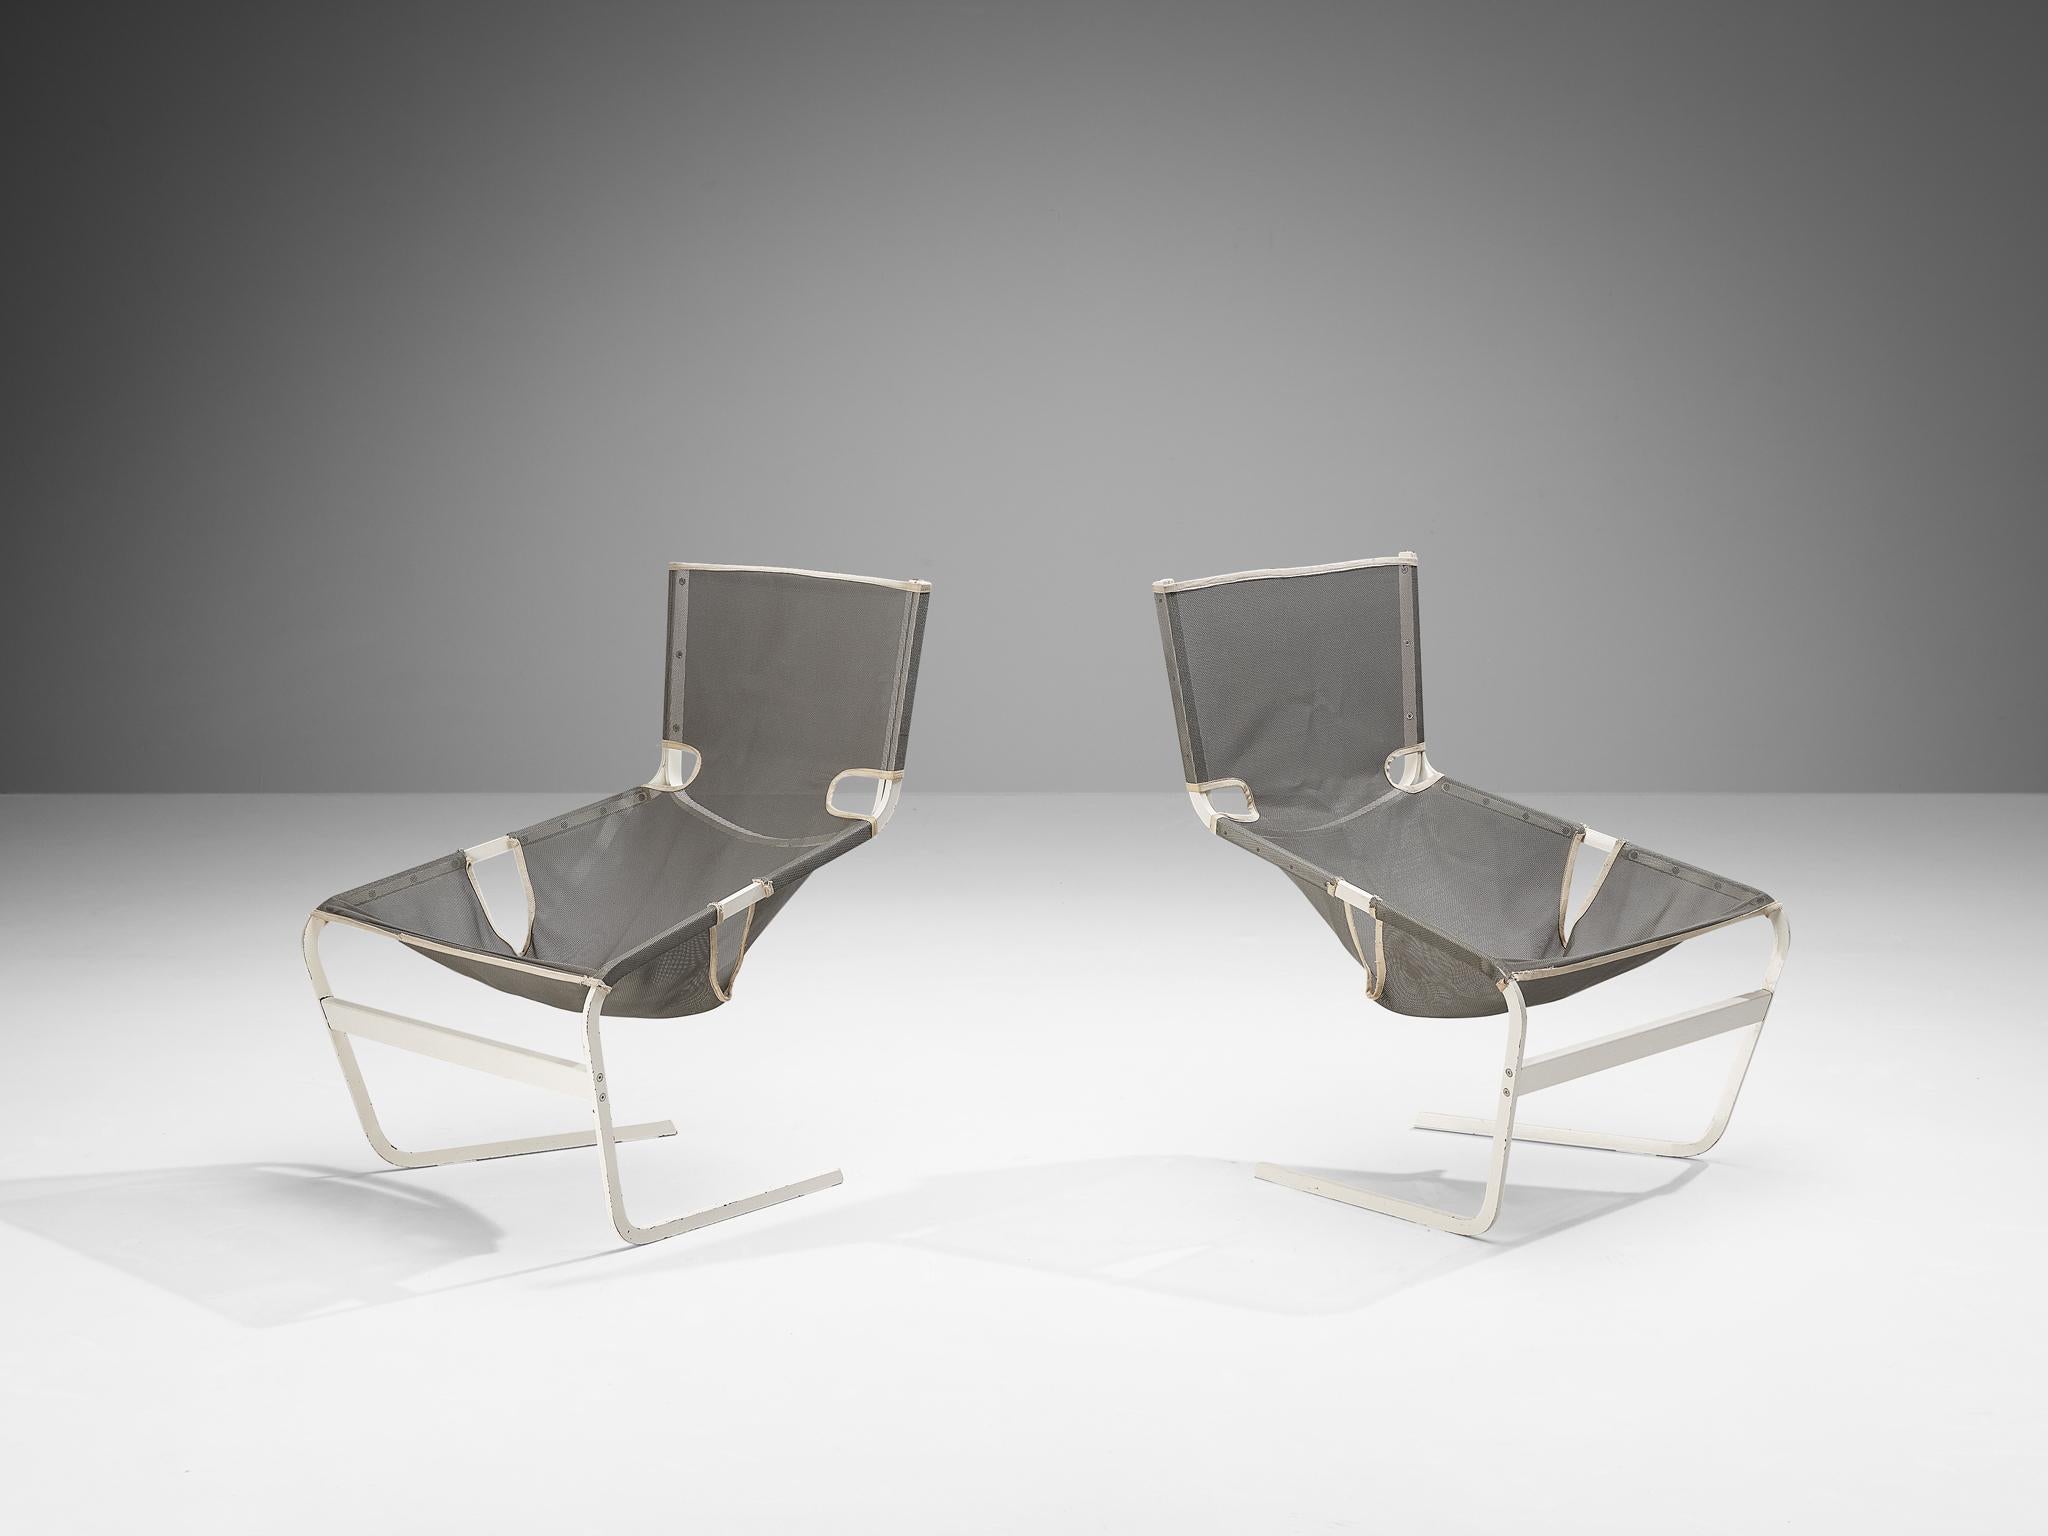 Sesselpaar von Pierre Paulin, Sesselpaar, Modell F-444, weißes Metall und Netz, Niederlande, um 1962

Dieses Paar Stühle aus Netzgewebe F-444 wurde 1962 von Pierre Paulin für Artifort entworfen. Dieser Stuhl hat klare Linien und eine schräge, offene